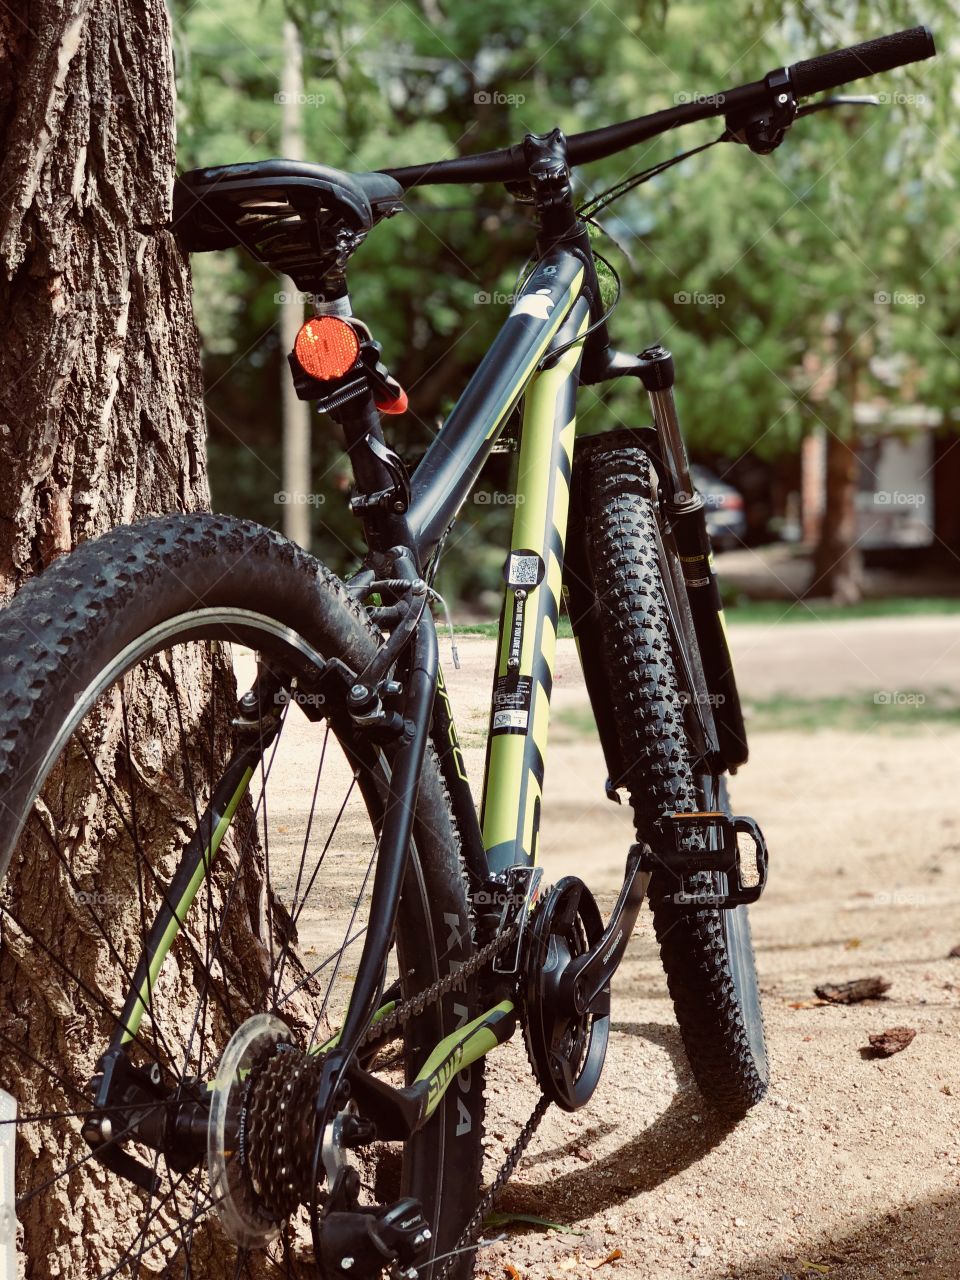 Amor al deporte, bicicleta scott, pasión, nuevas aventuras arriba de una bici, Fotografía IPhone 8 Plus.